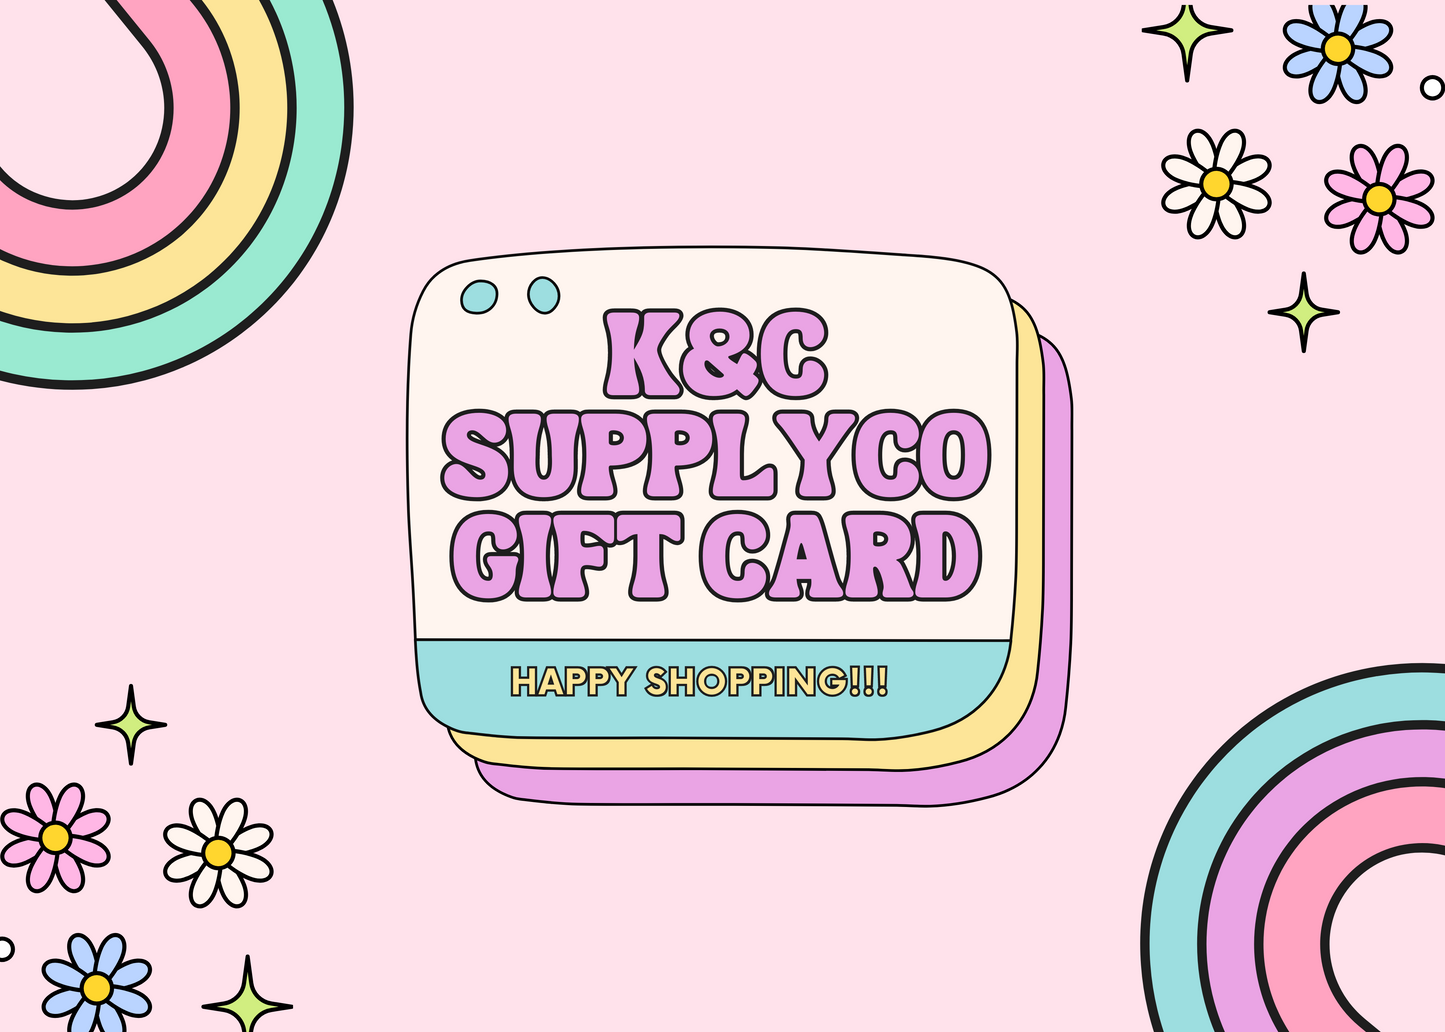 KandCsupplyco Gift Card